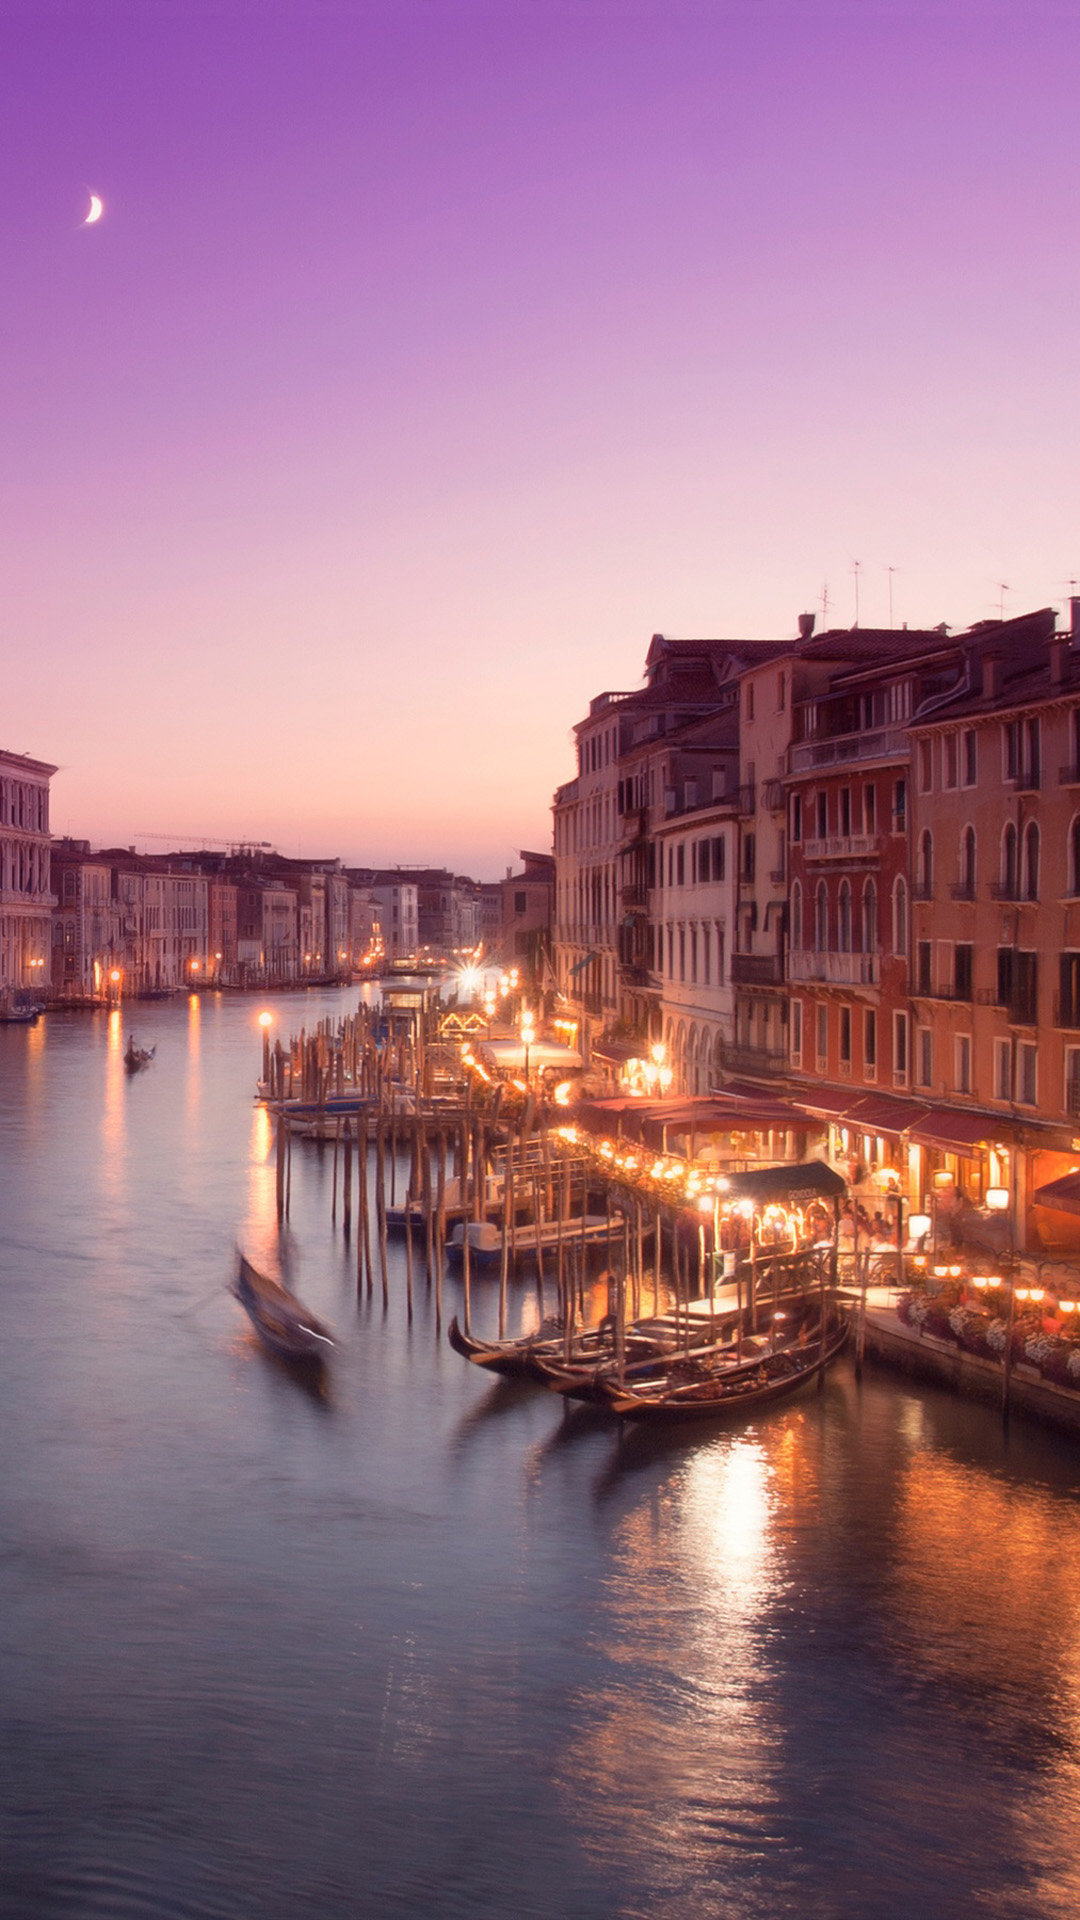 ヴェネツィアの美しい夜景 おしゃれな夜景のiphone壁紙 Iphone11 スマホ壁紙 待受画像ギャラリー